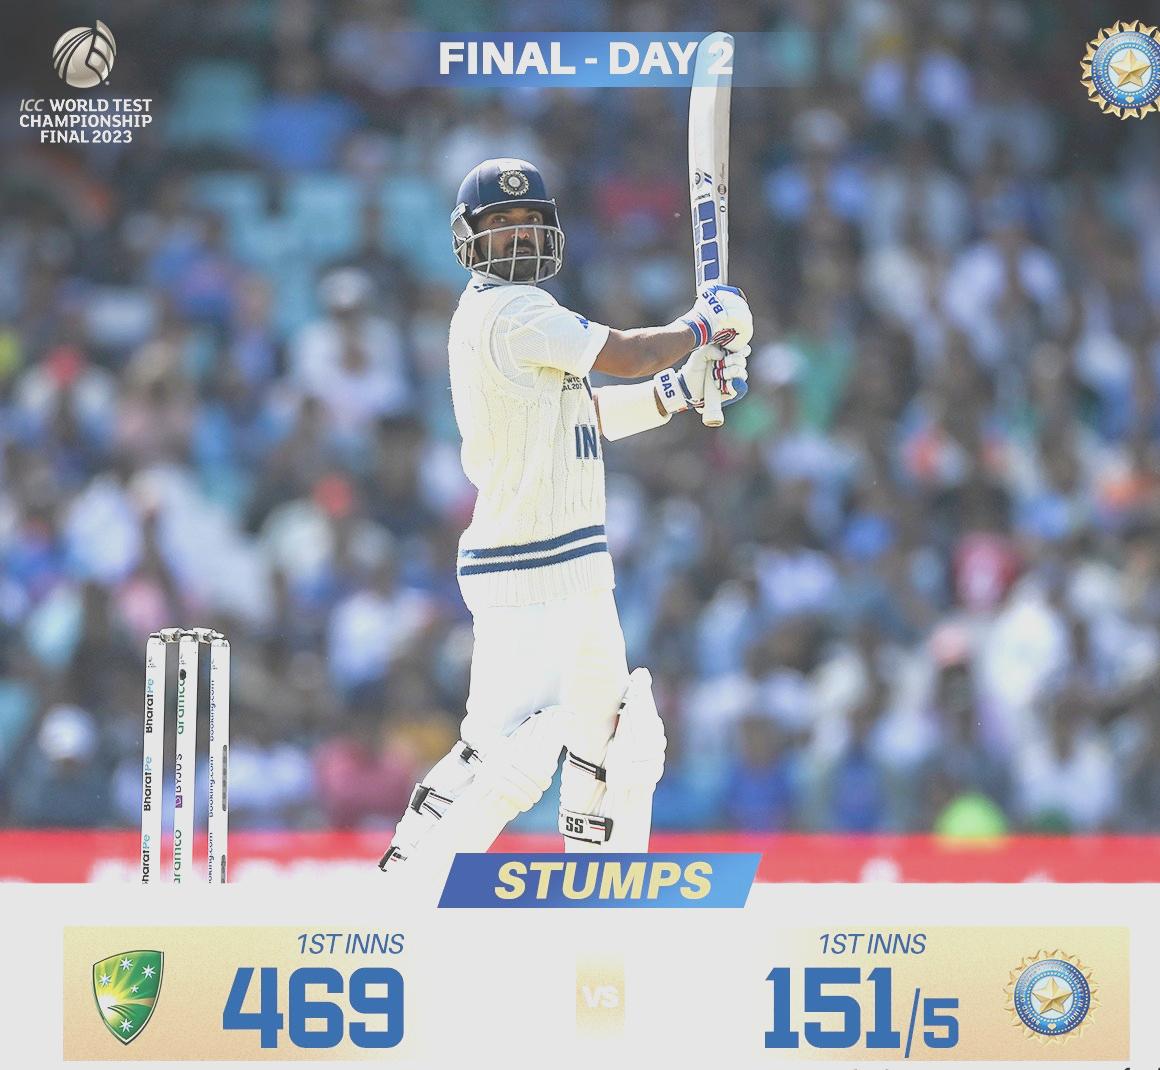 ऑस्ट्रेलिया के 469 रन, भारत ने 151 रन तक पांच विकेट गंवाए